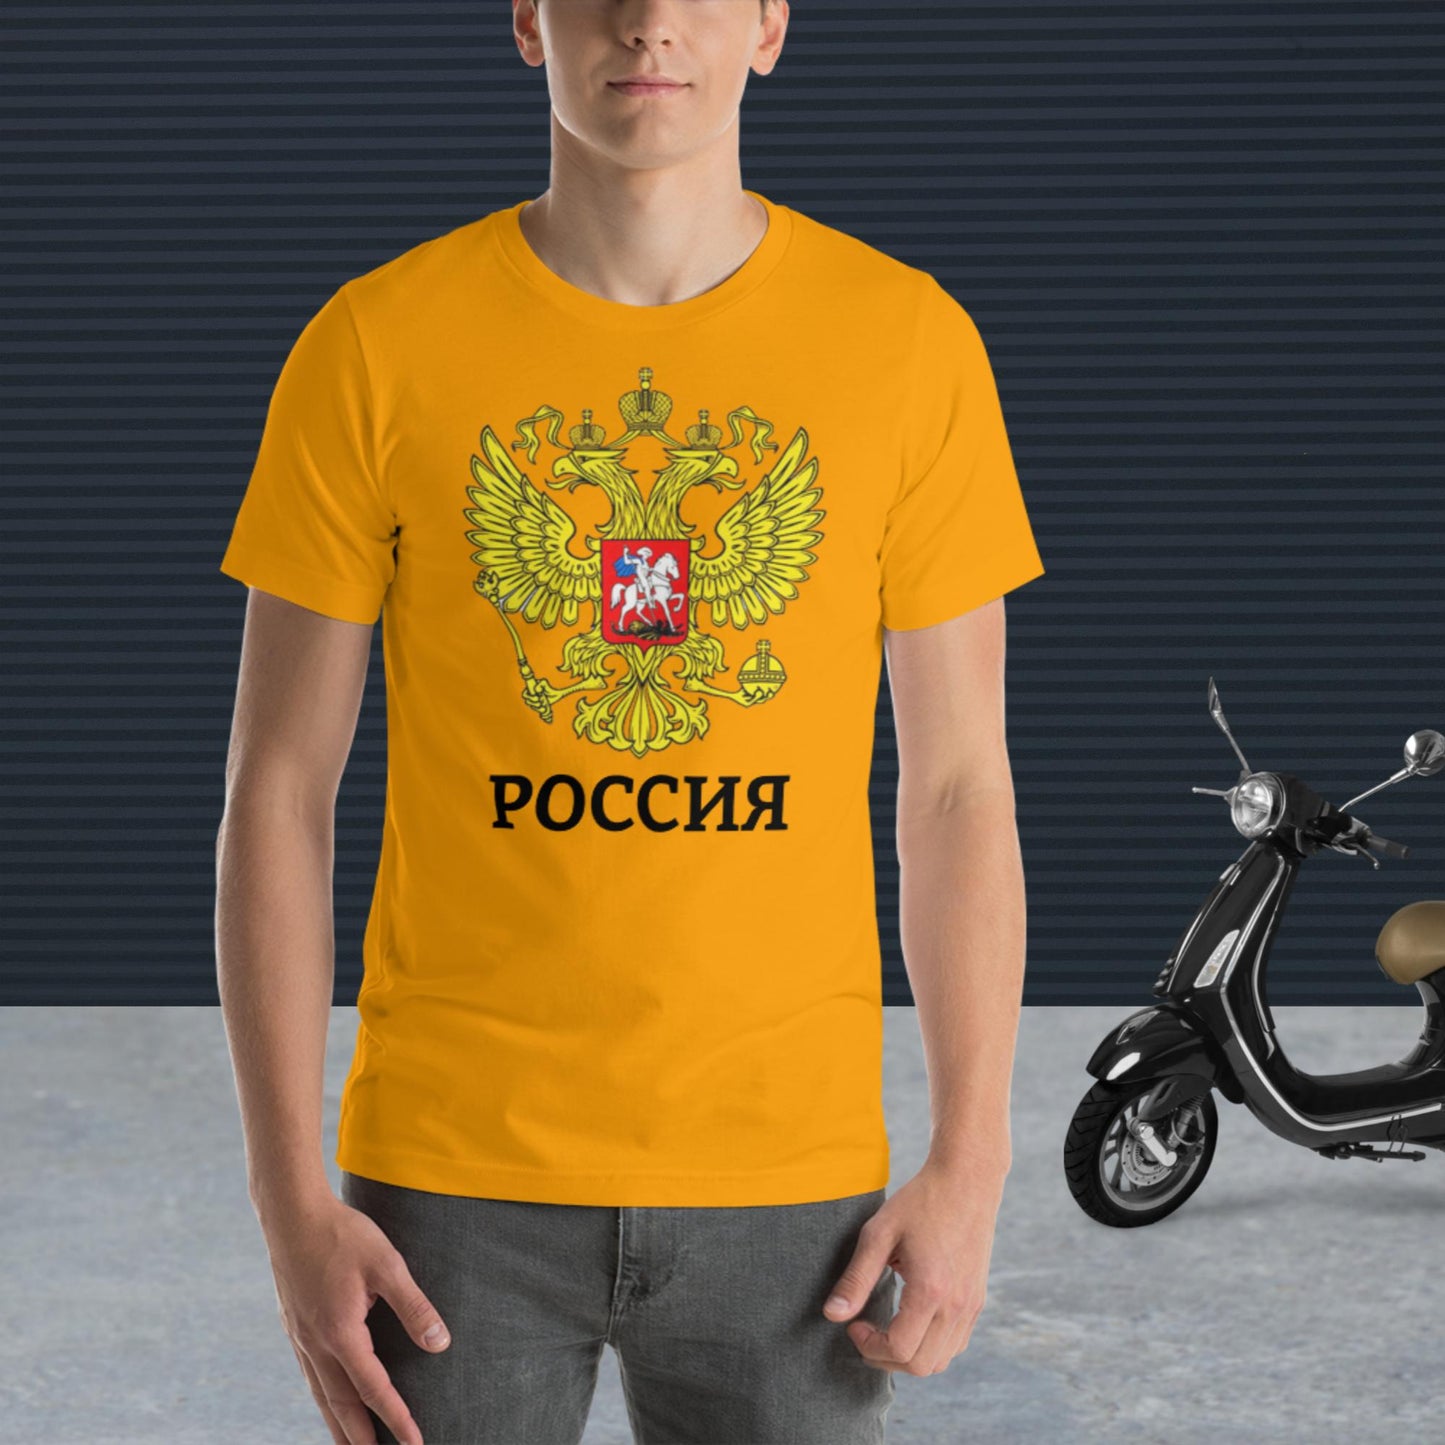 Russland Basic T-Shirt mit weiteren zusätzlichen Farben